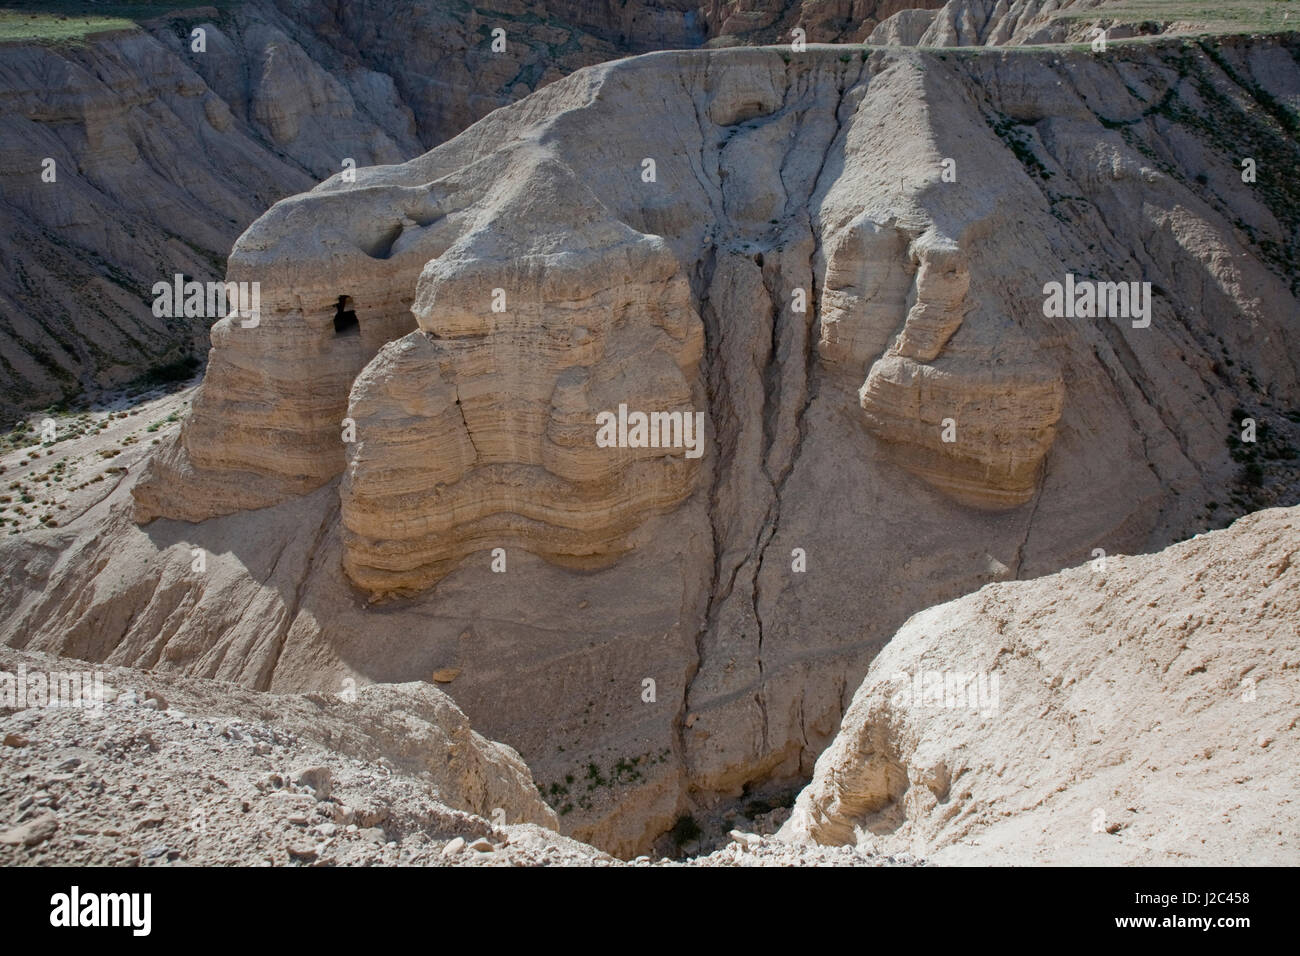 Höhle bei Qumran, Israel am Ufer des Toten Meeres, dem alten biblische Schriftrollen der Essener jüdischen Gelehrten, "Die Schriftrollen vom Toten Meer" im Jahre 1947 von Beduinen entdeckt wurden. Stockfoto